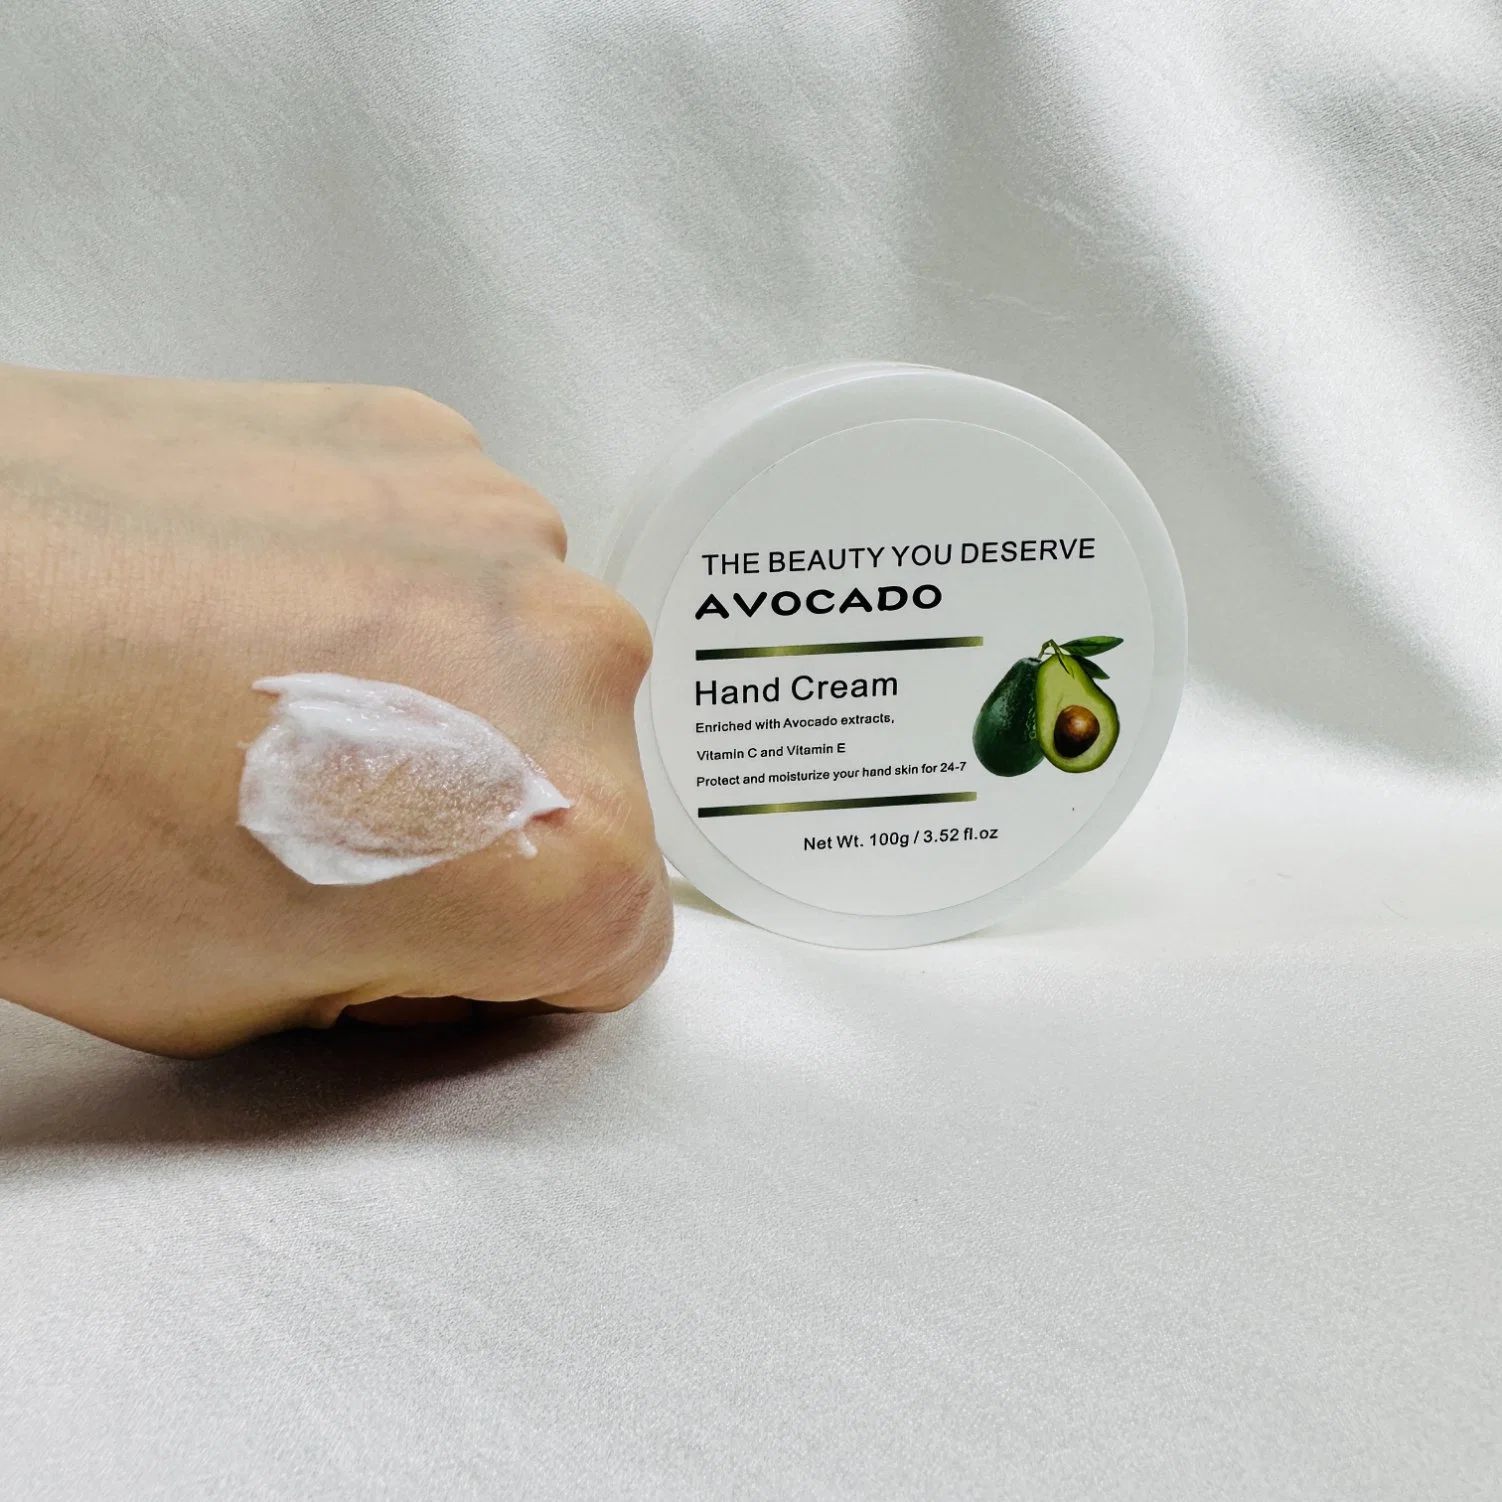 Crema de manos OEM Natural Plant a medida Cuidado de blanqueamiento Loción Moisturizer Crema de manos de Marca privada